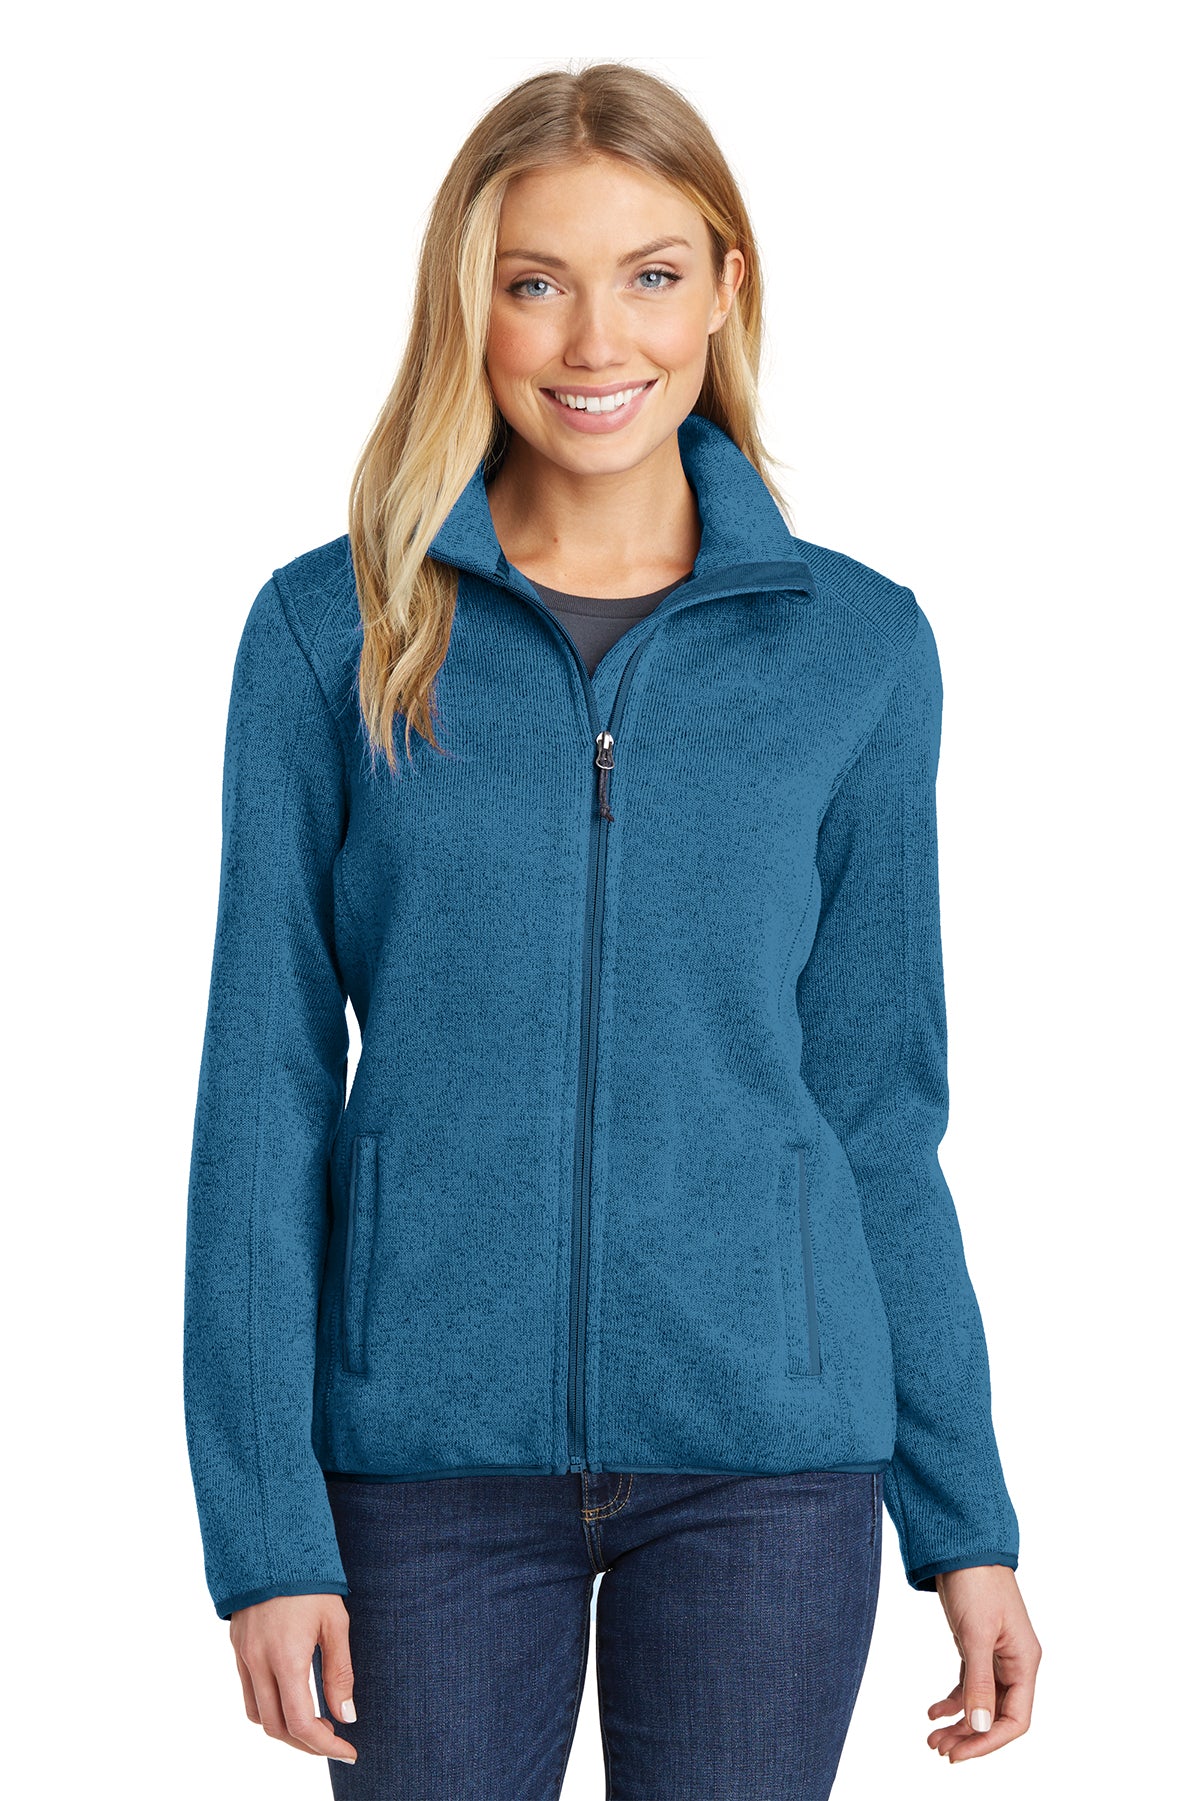 PA L232 Women's Sweater Fleece Jacket Med Blue